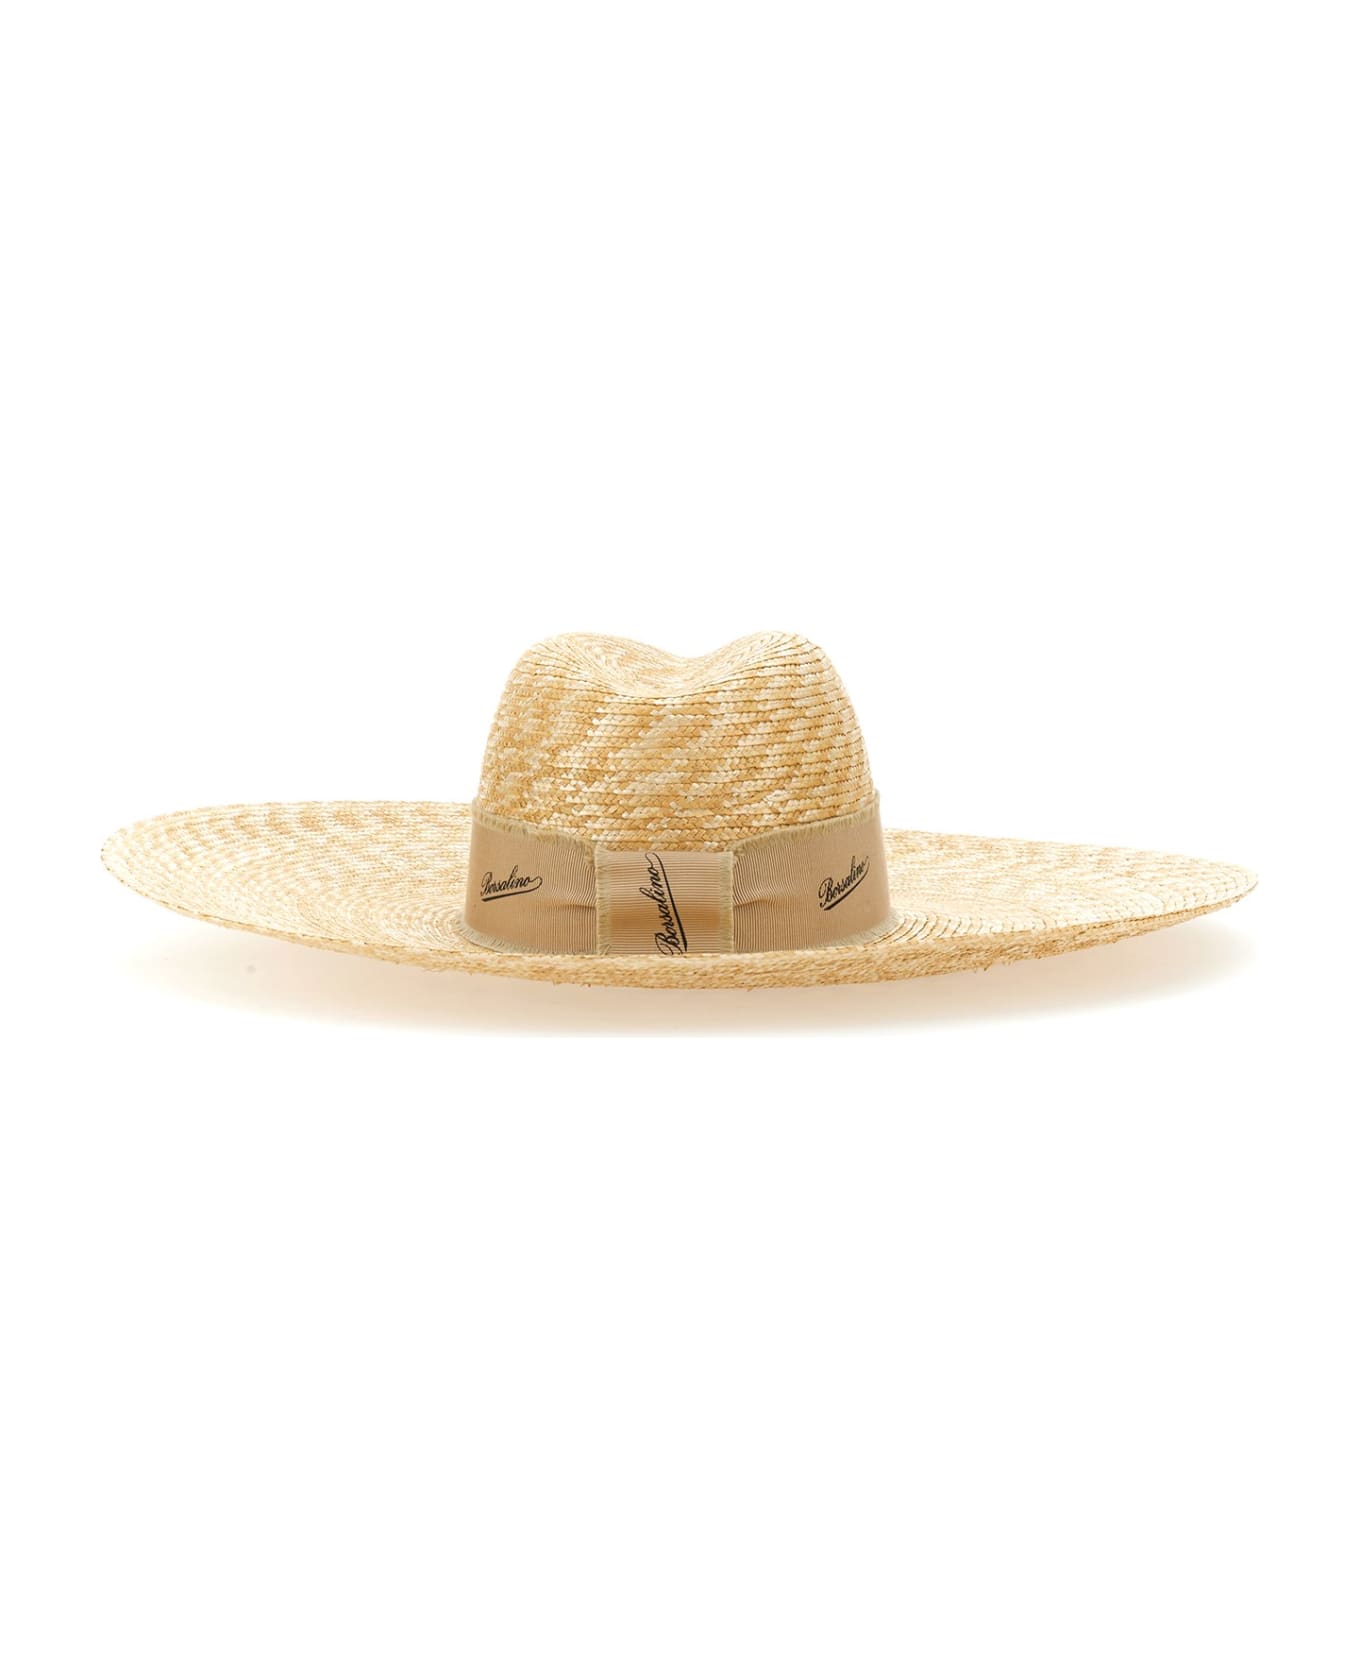 Borsalino Straw Hat - Naturale 帽子